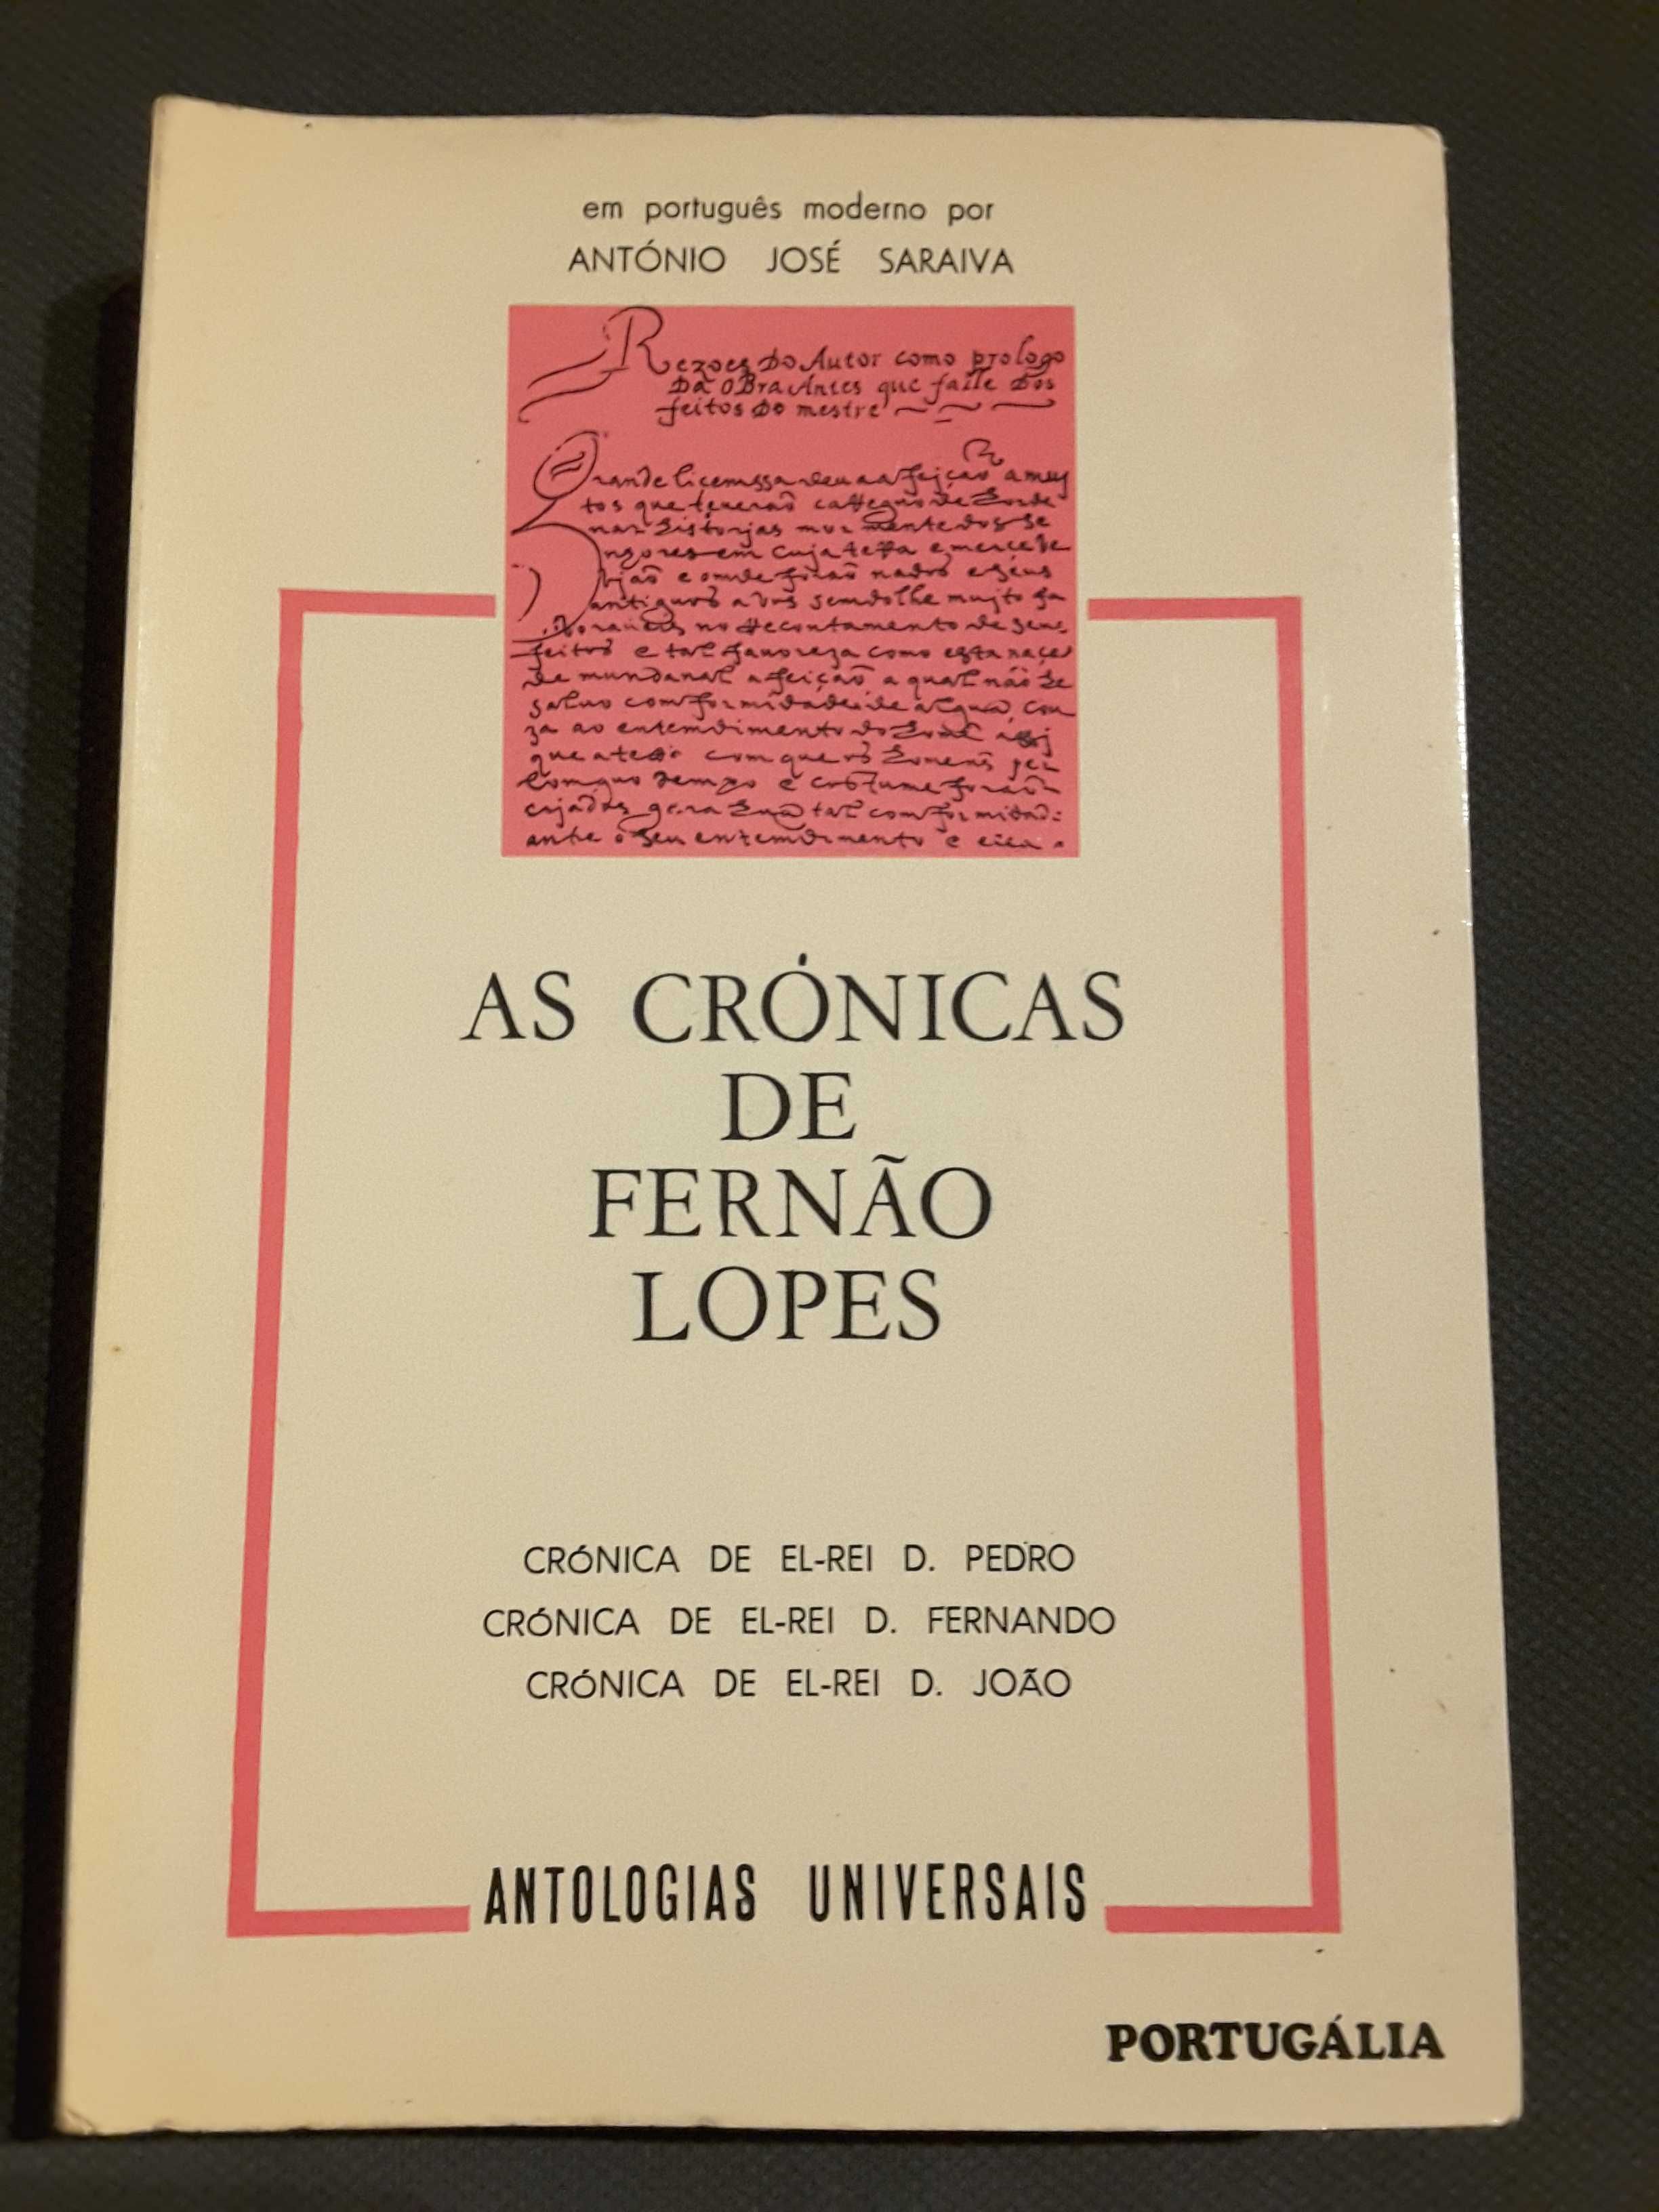 D. Afonso V / A Lisboa Medieval/ As Crónicas de Fernão Lopes